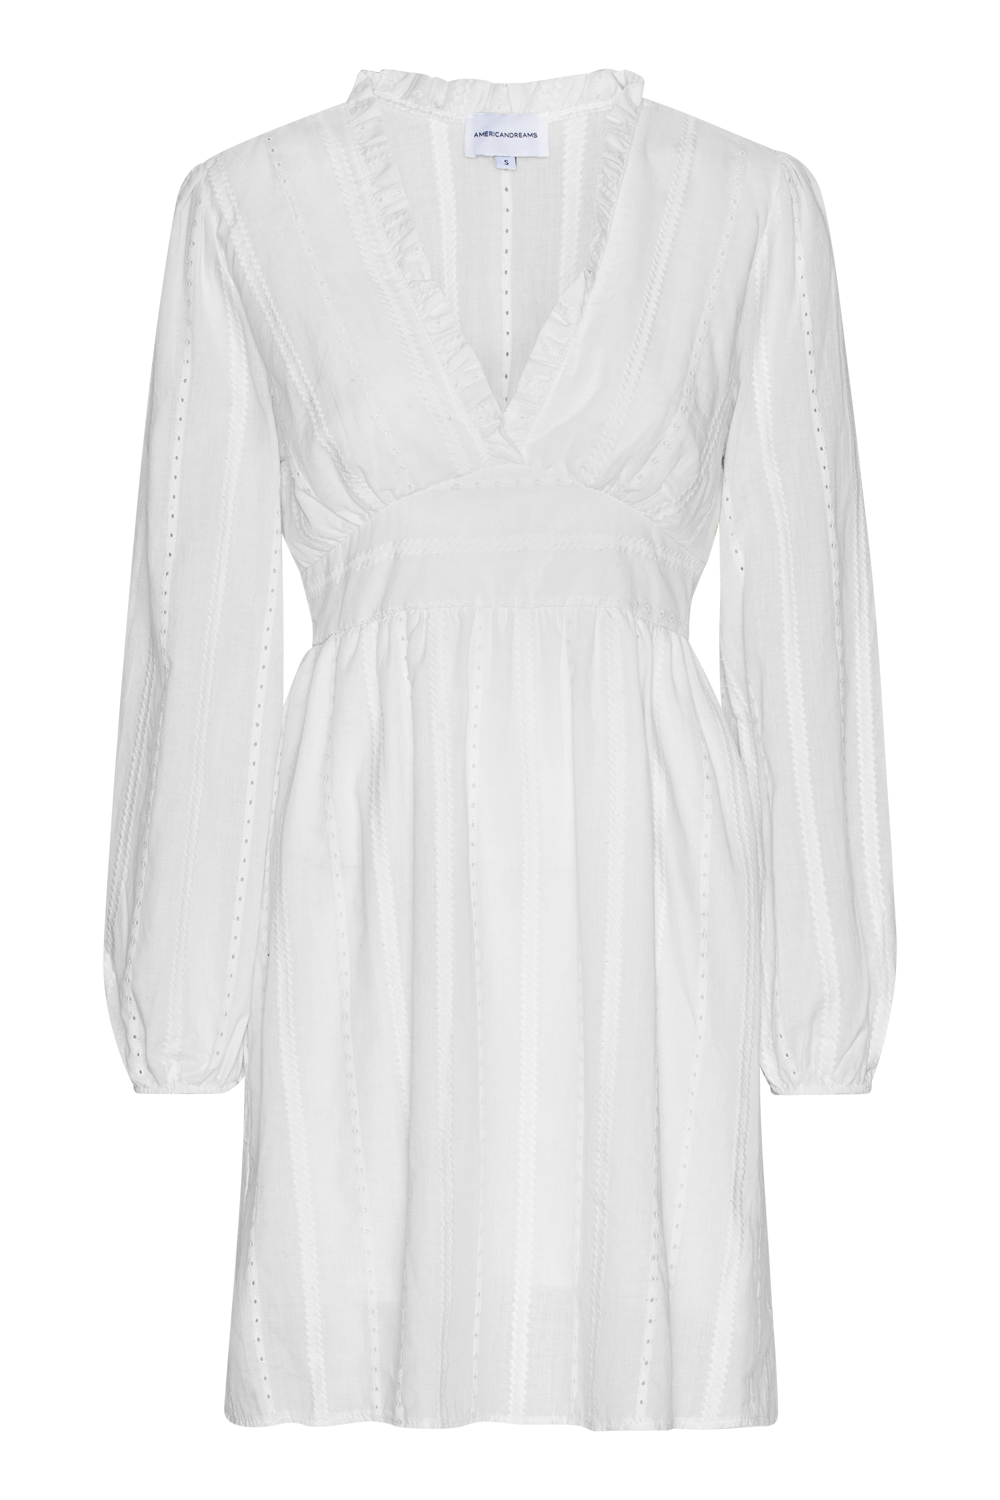 Umi Cotton Short Dress White